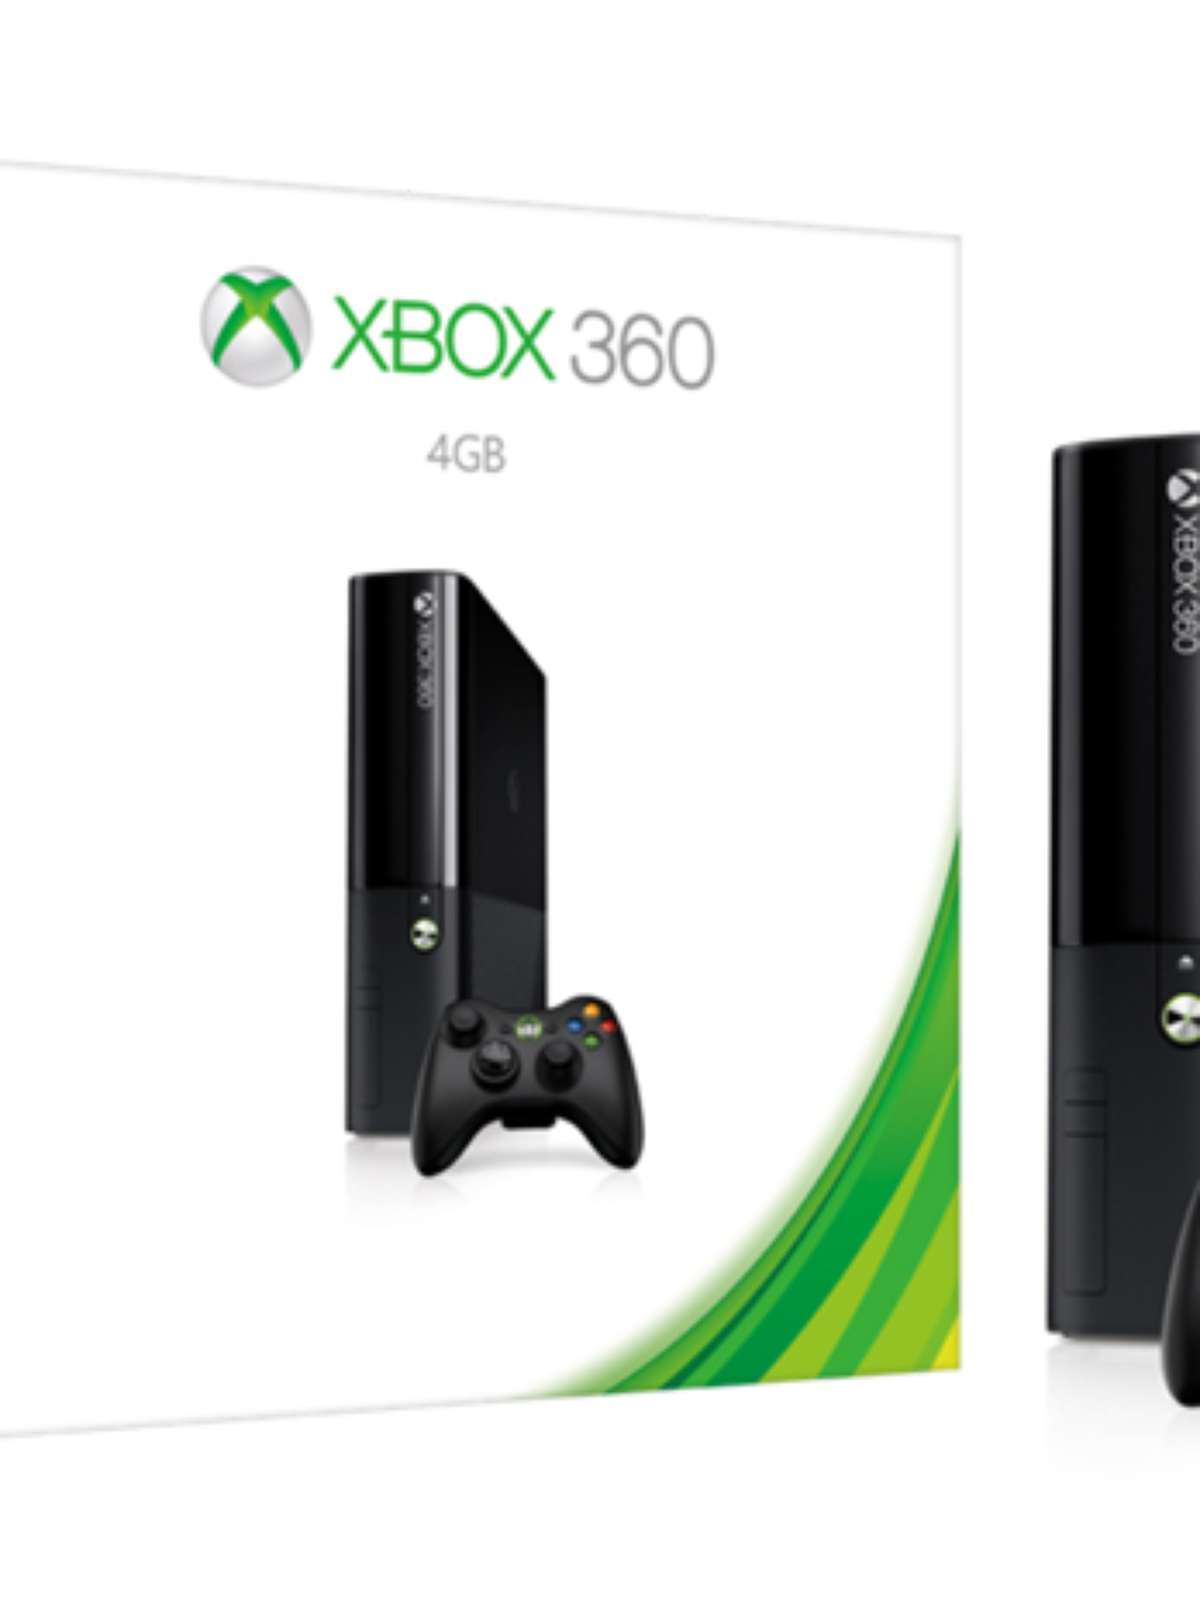 290 melhor ideia de Xbox 360 jogos